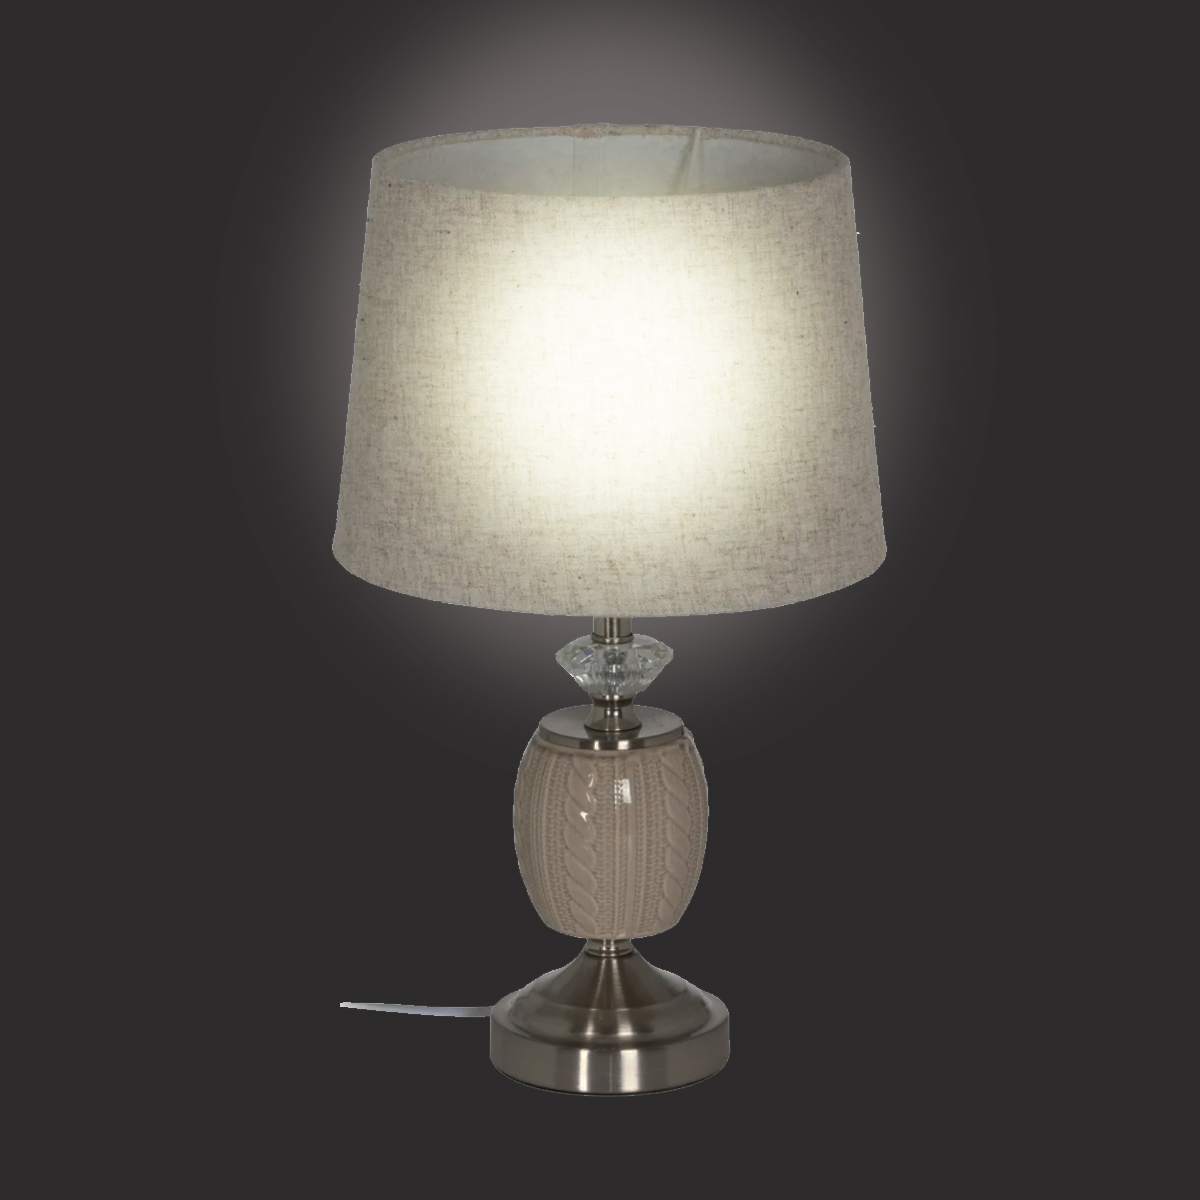 Ceramic and metal lamp 45 cm